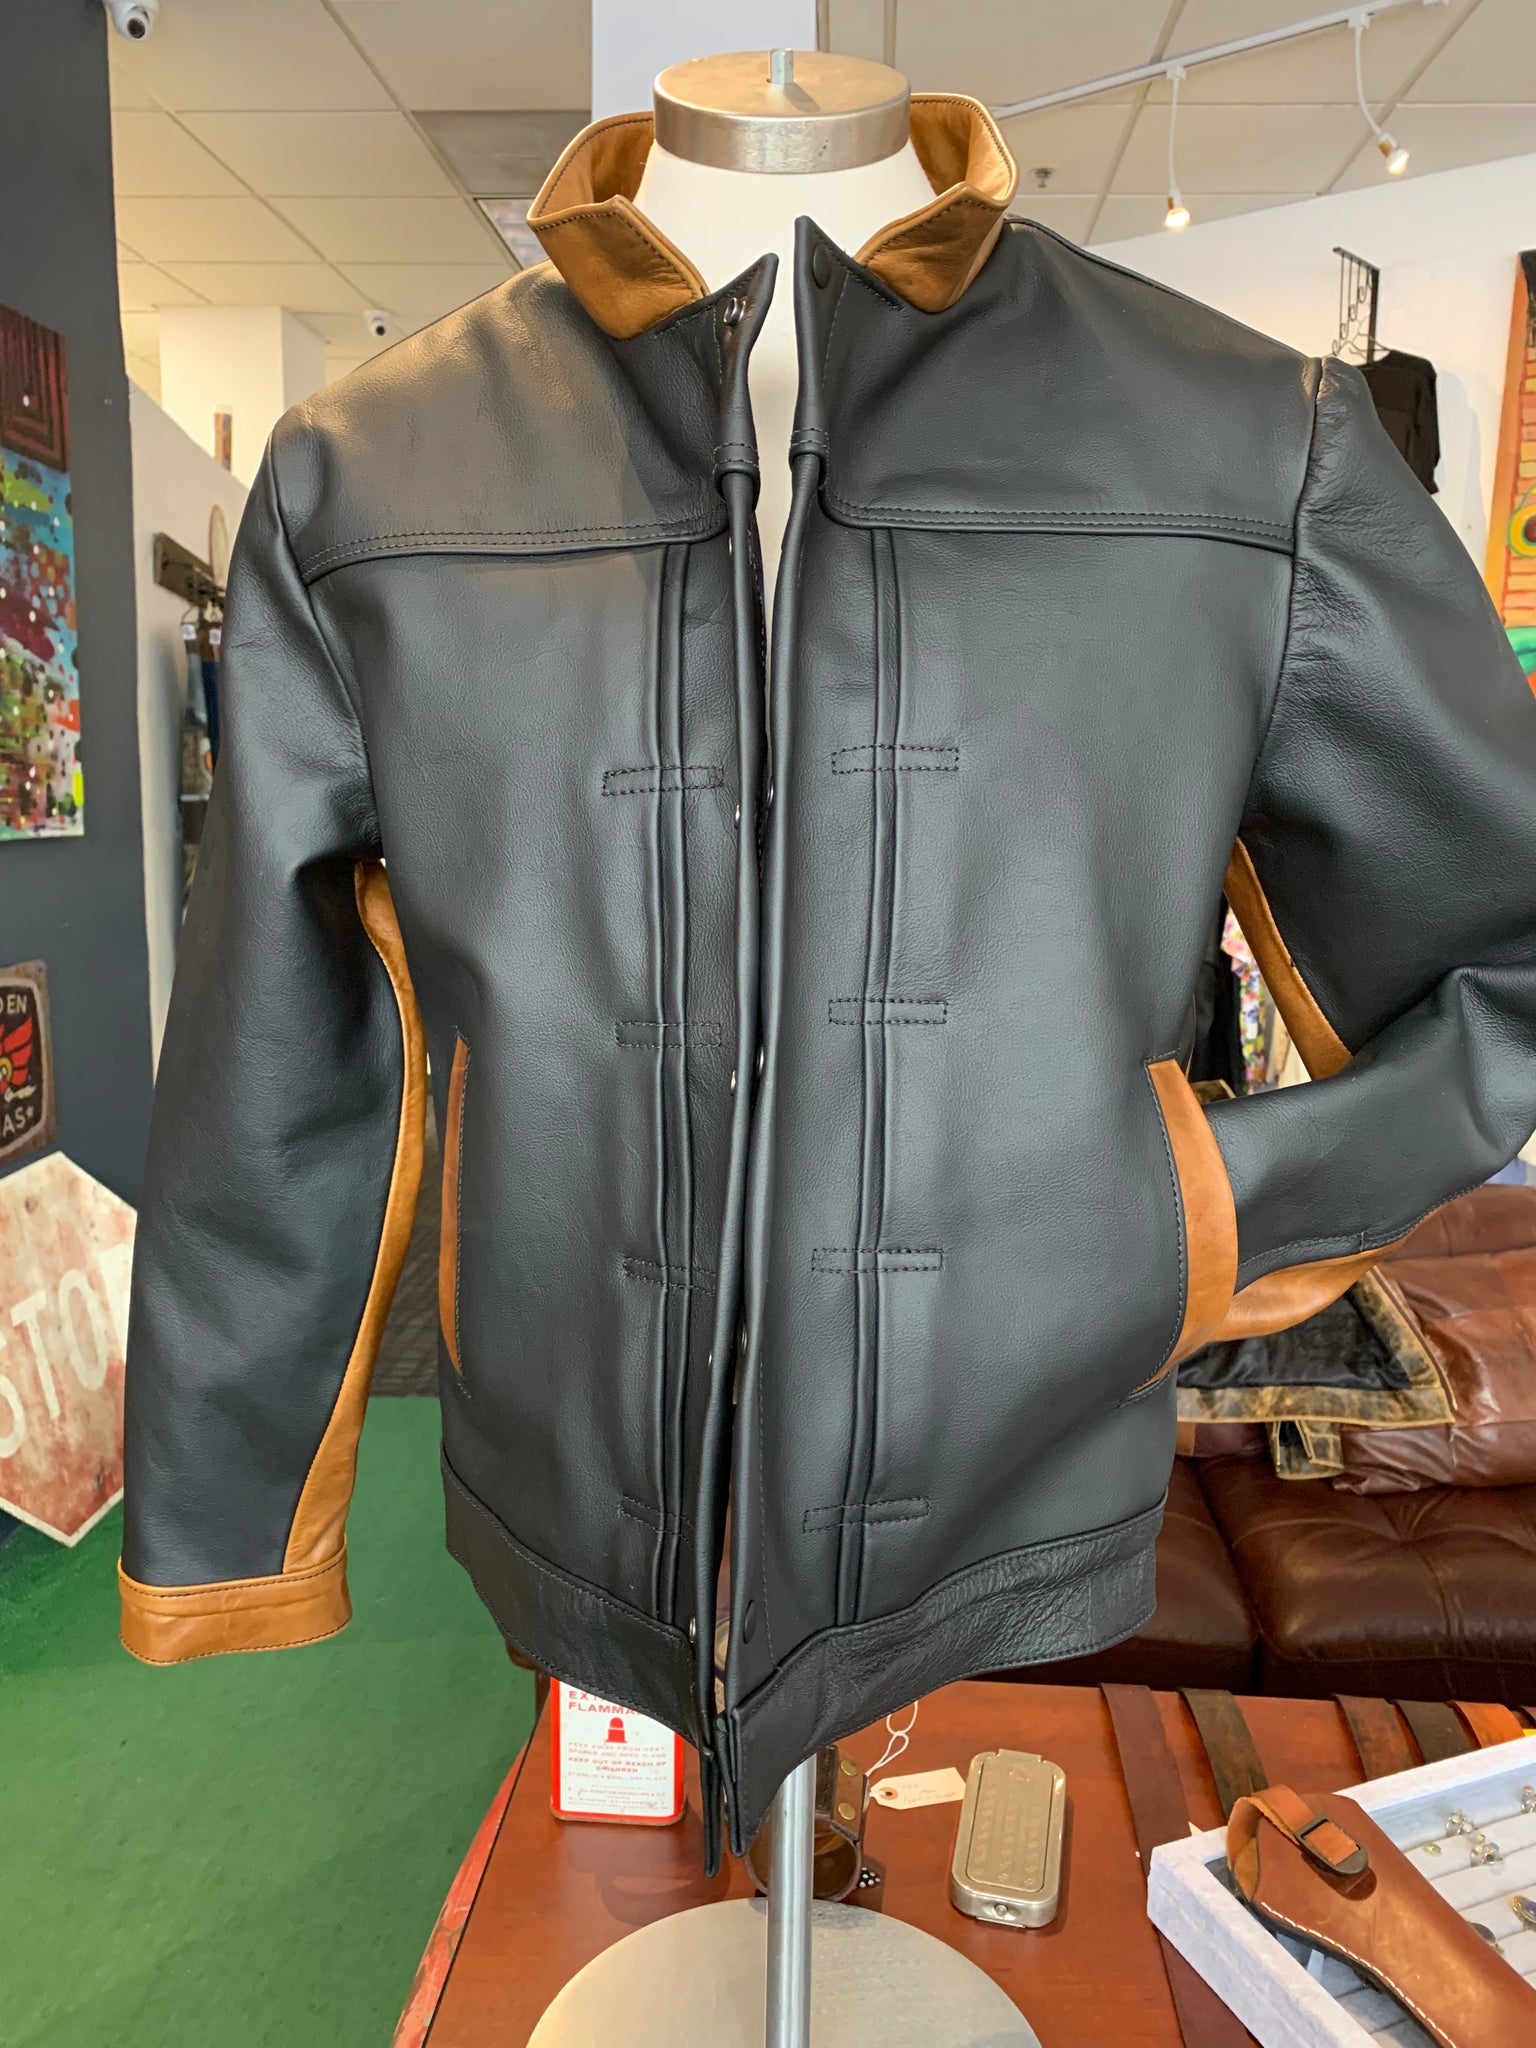 Japanese style leather jacket